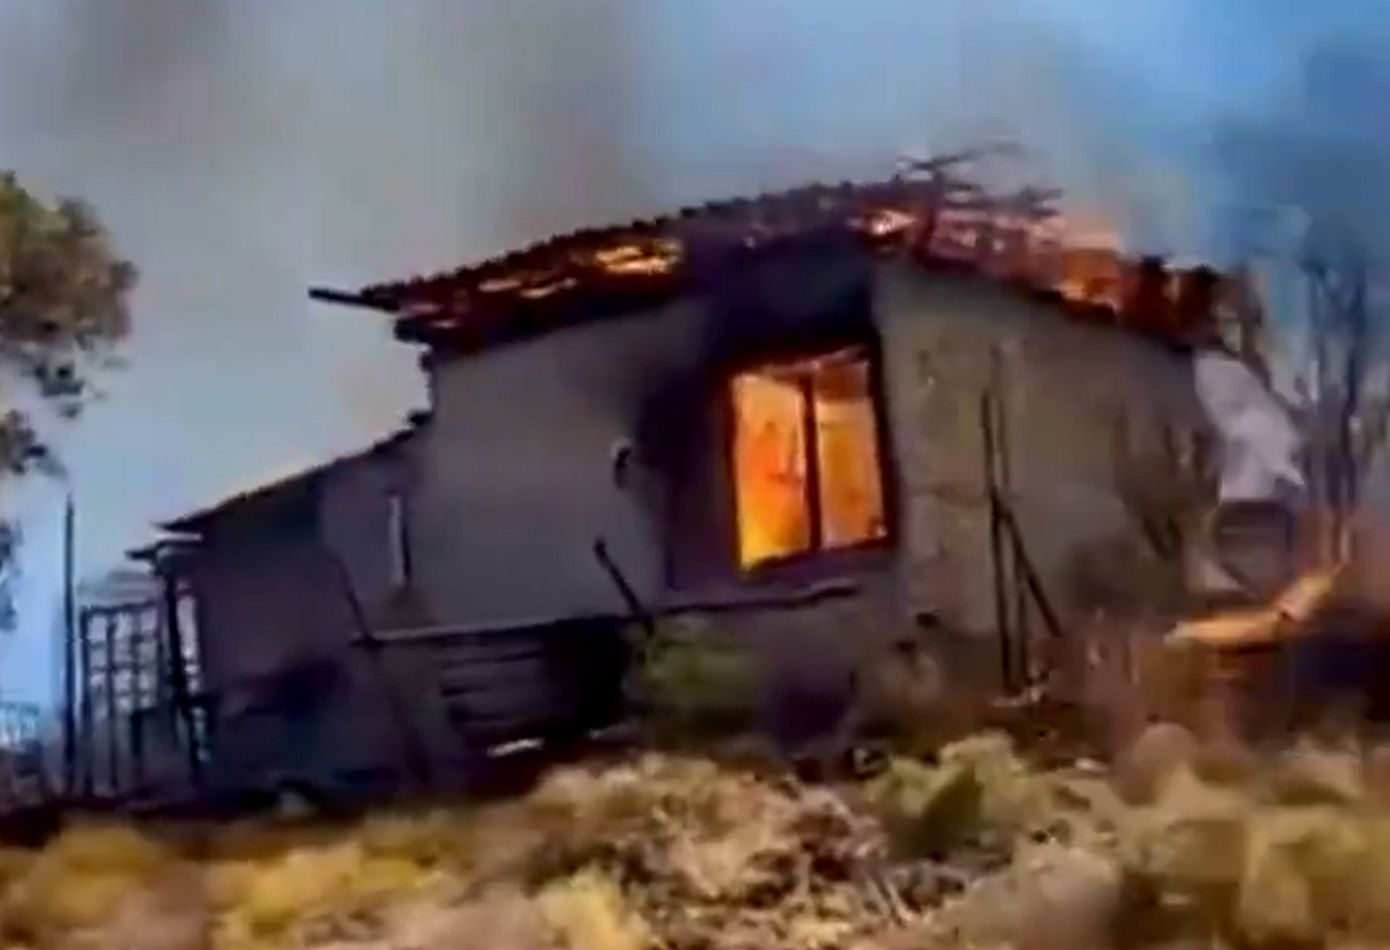 Καίγονται σπίτια στην Κερατέα &#8211; Τρίτο μήνυμα από το 112 για εκκένωση οικισμών, ενισχύονται οι πυροσβεστικές δυνάμεις